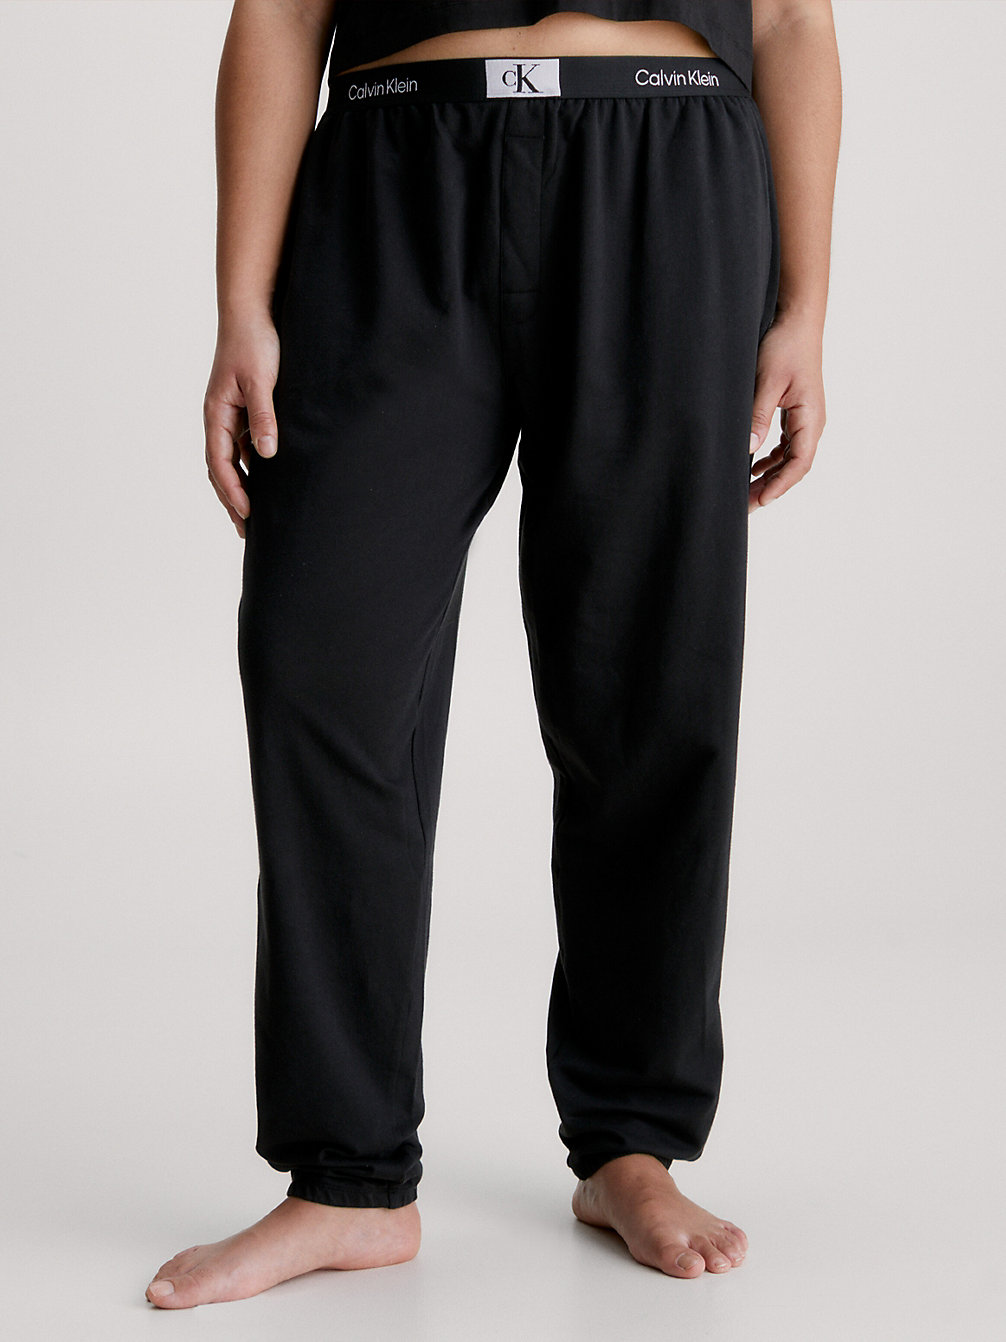 BLACK > Spodnie Dresowe Po Domu Plus Size - Ck96 > undefined Kobiety - Calvin Klein